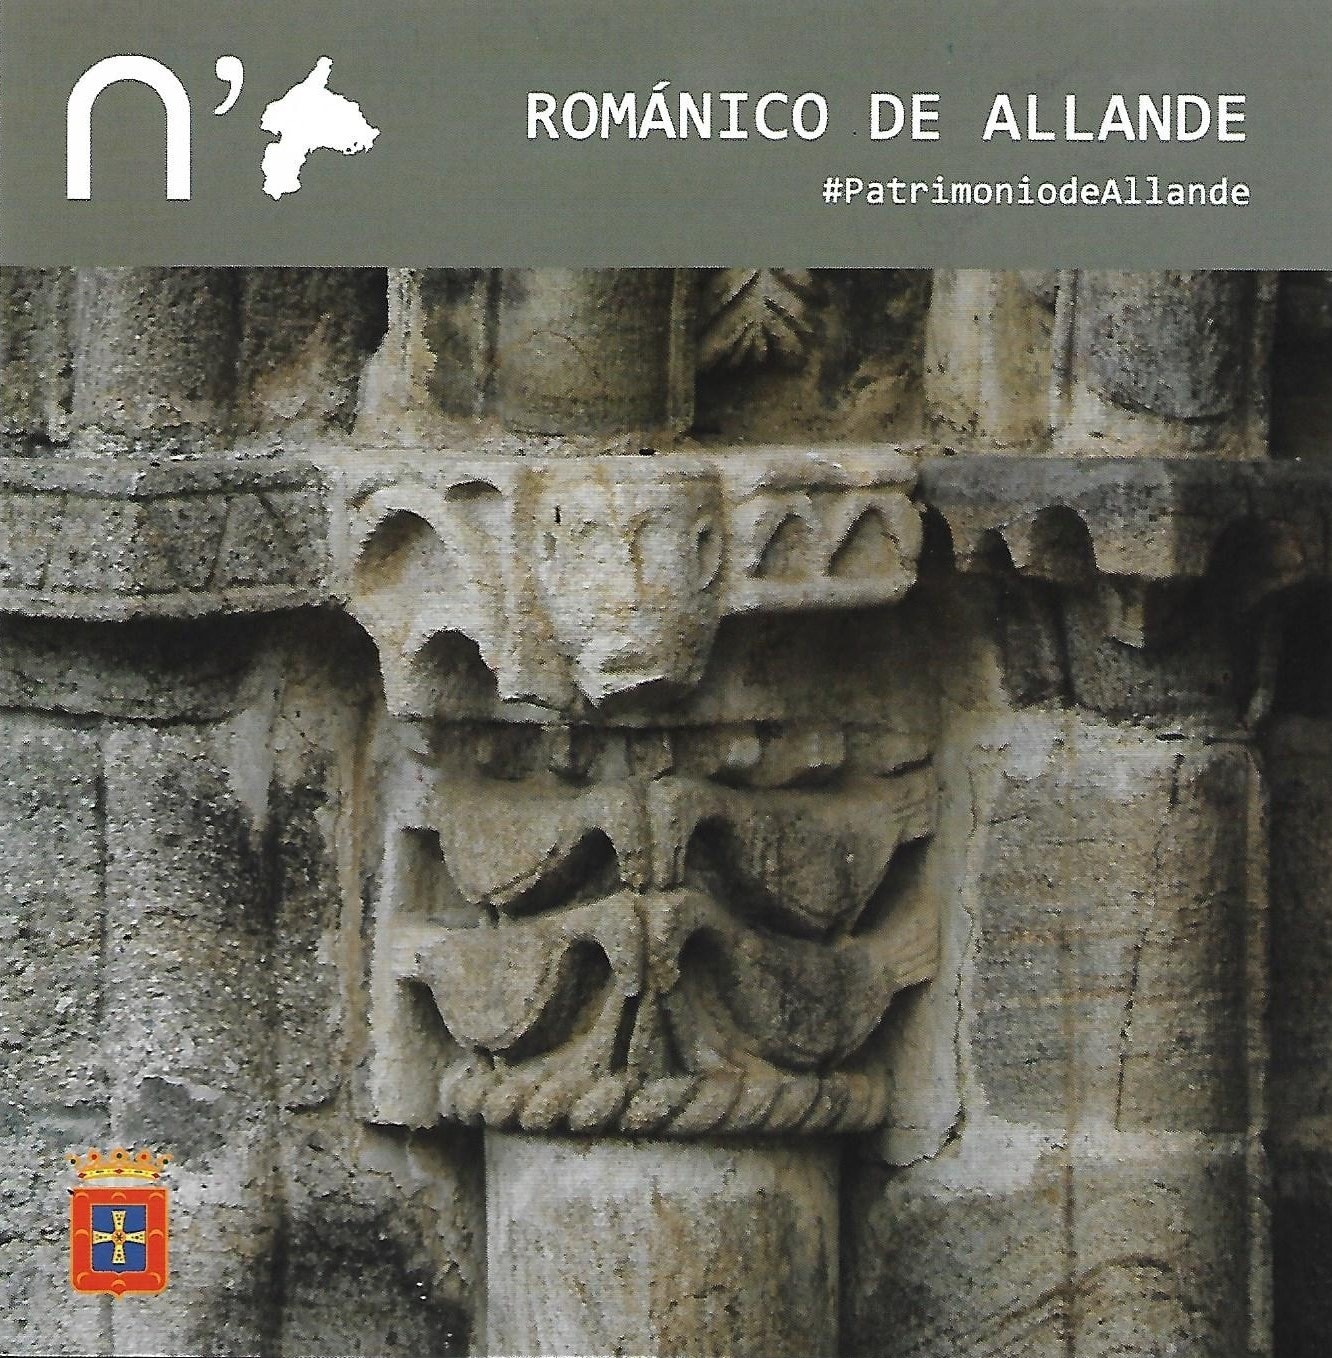 Promoción del románico del concejo de Allande